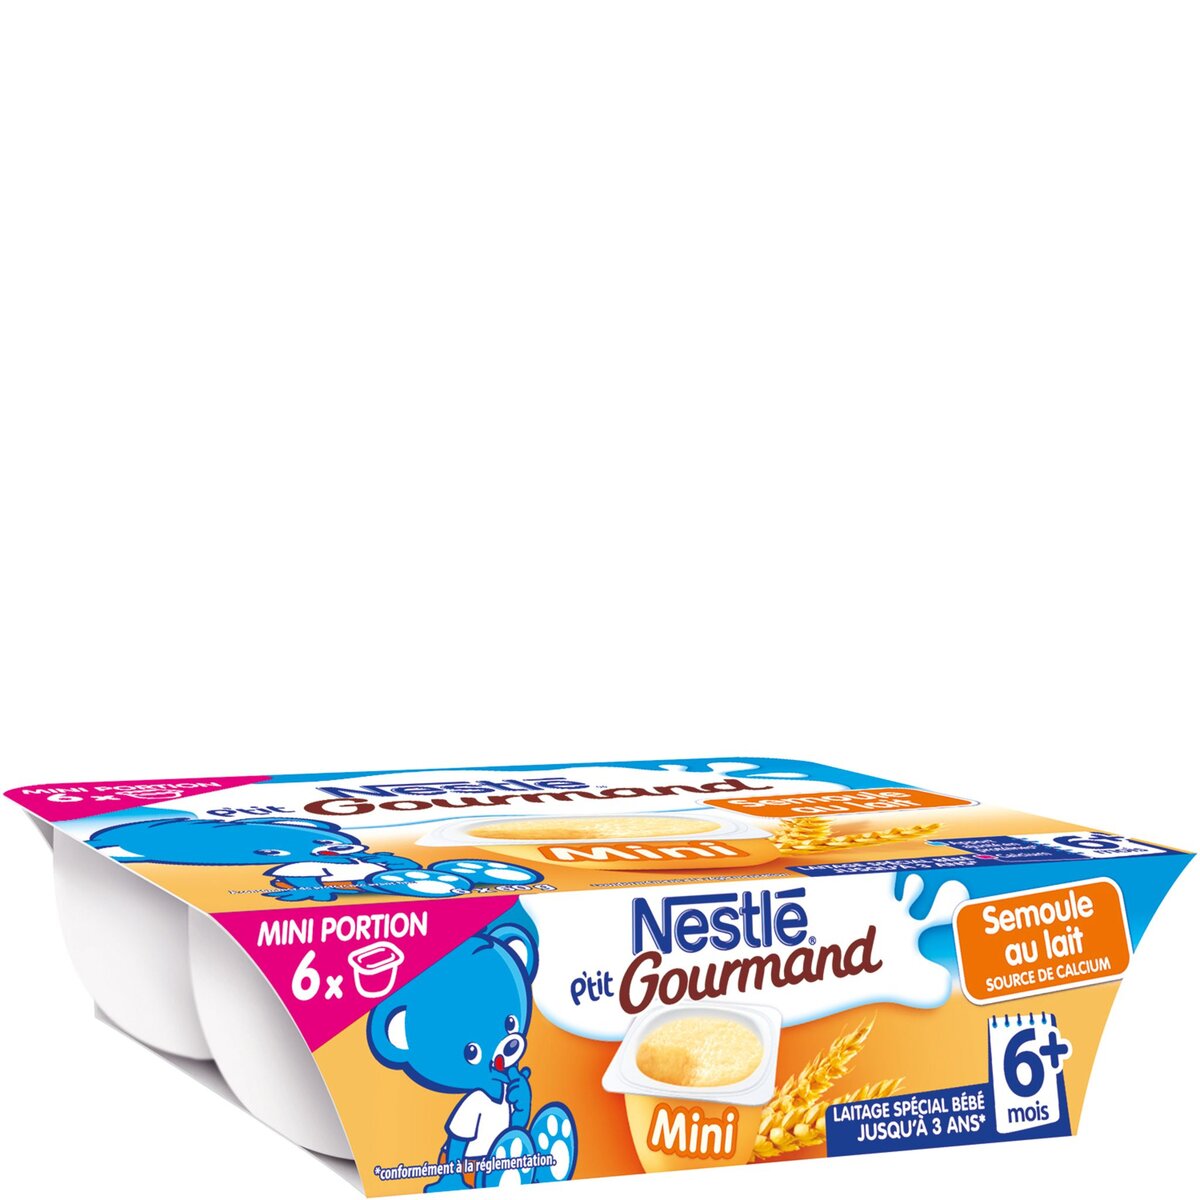 NESTLE Nestlé ptit gourmand mini semoule au lait 6x60g dès 6mois